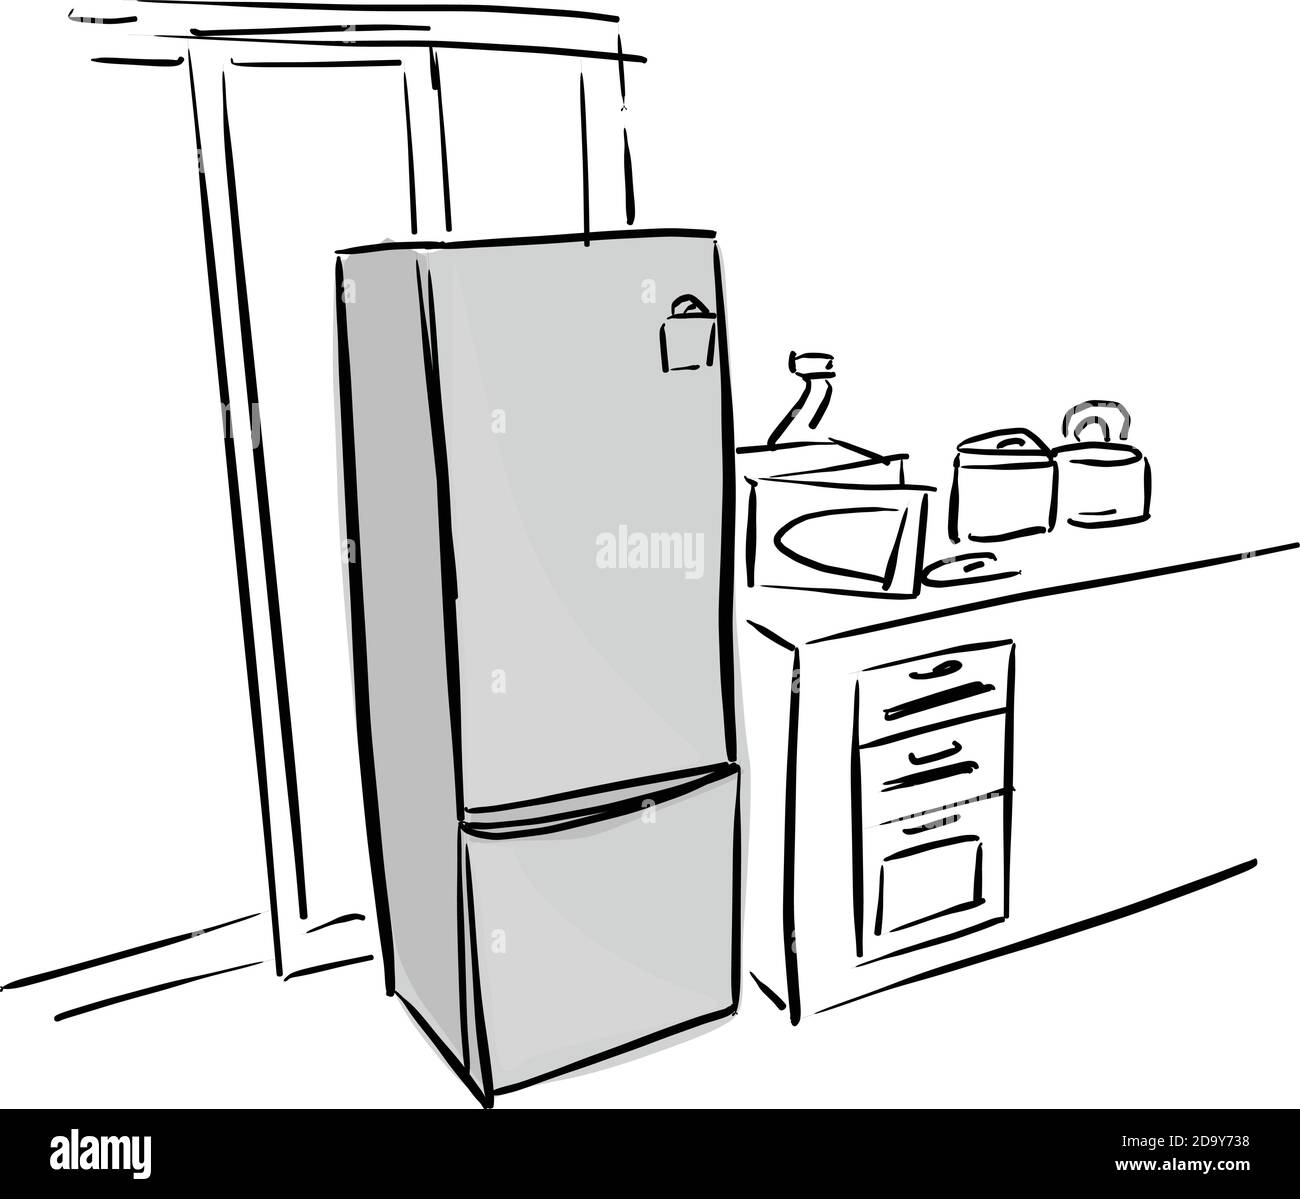 Grau Kühlschrank in Küche Vektor Illustration Skizze Doodle Hand gezeichnet Mit schwarzen Linien isoliert auf weißem Hintergrund Stock Vektor